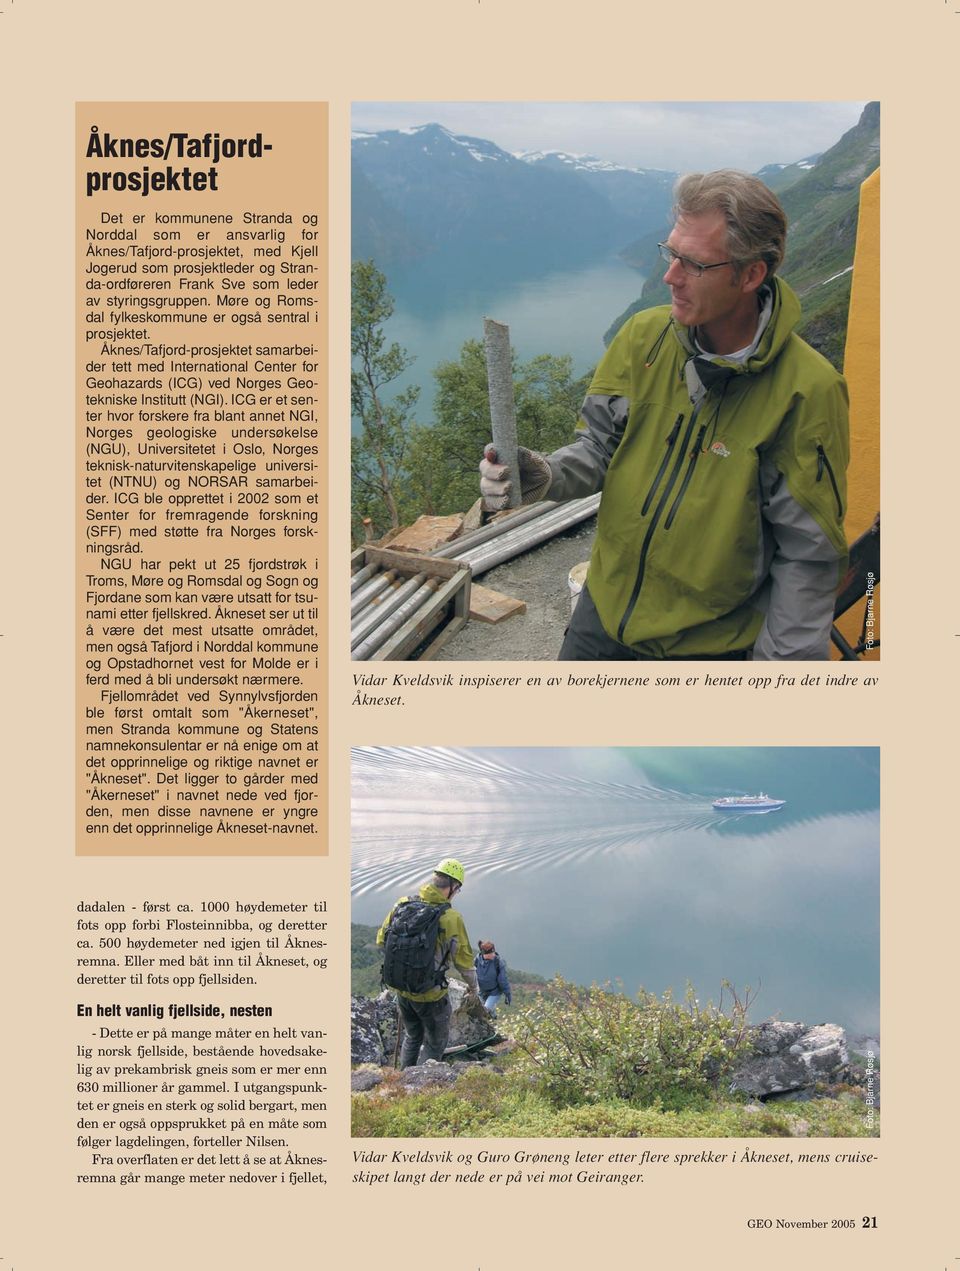 Åknes/Tafjord-prosjektet samarbeider tett med International Center for Geohazards (ICG) ved Norges Geotekniske Institutt (NGI).